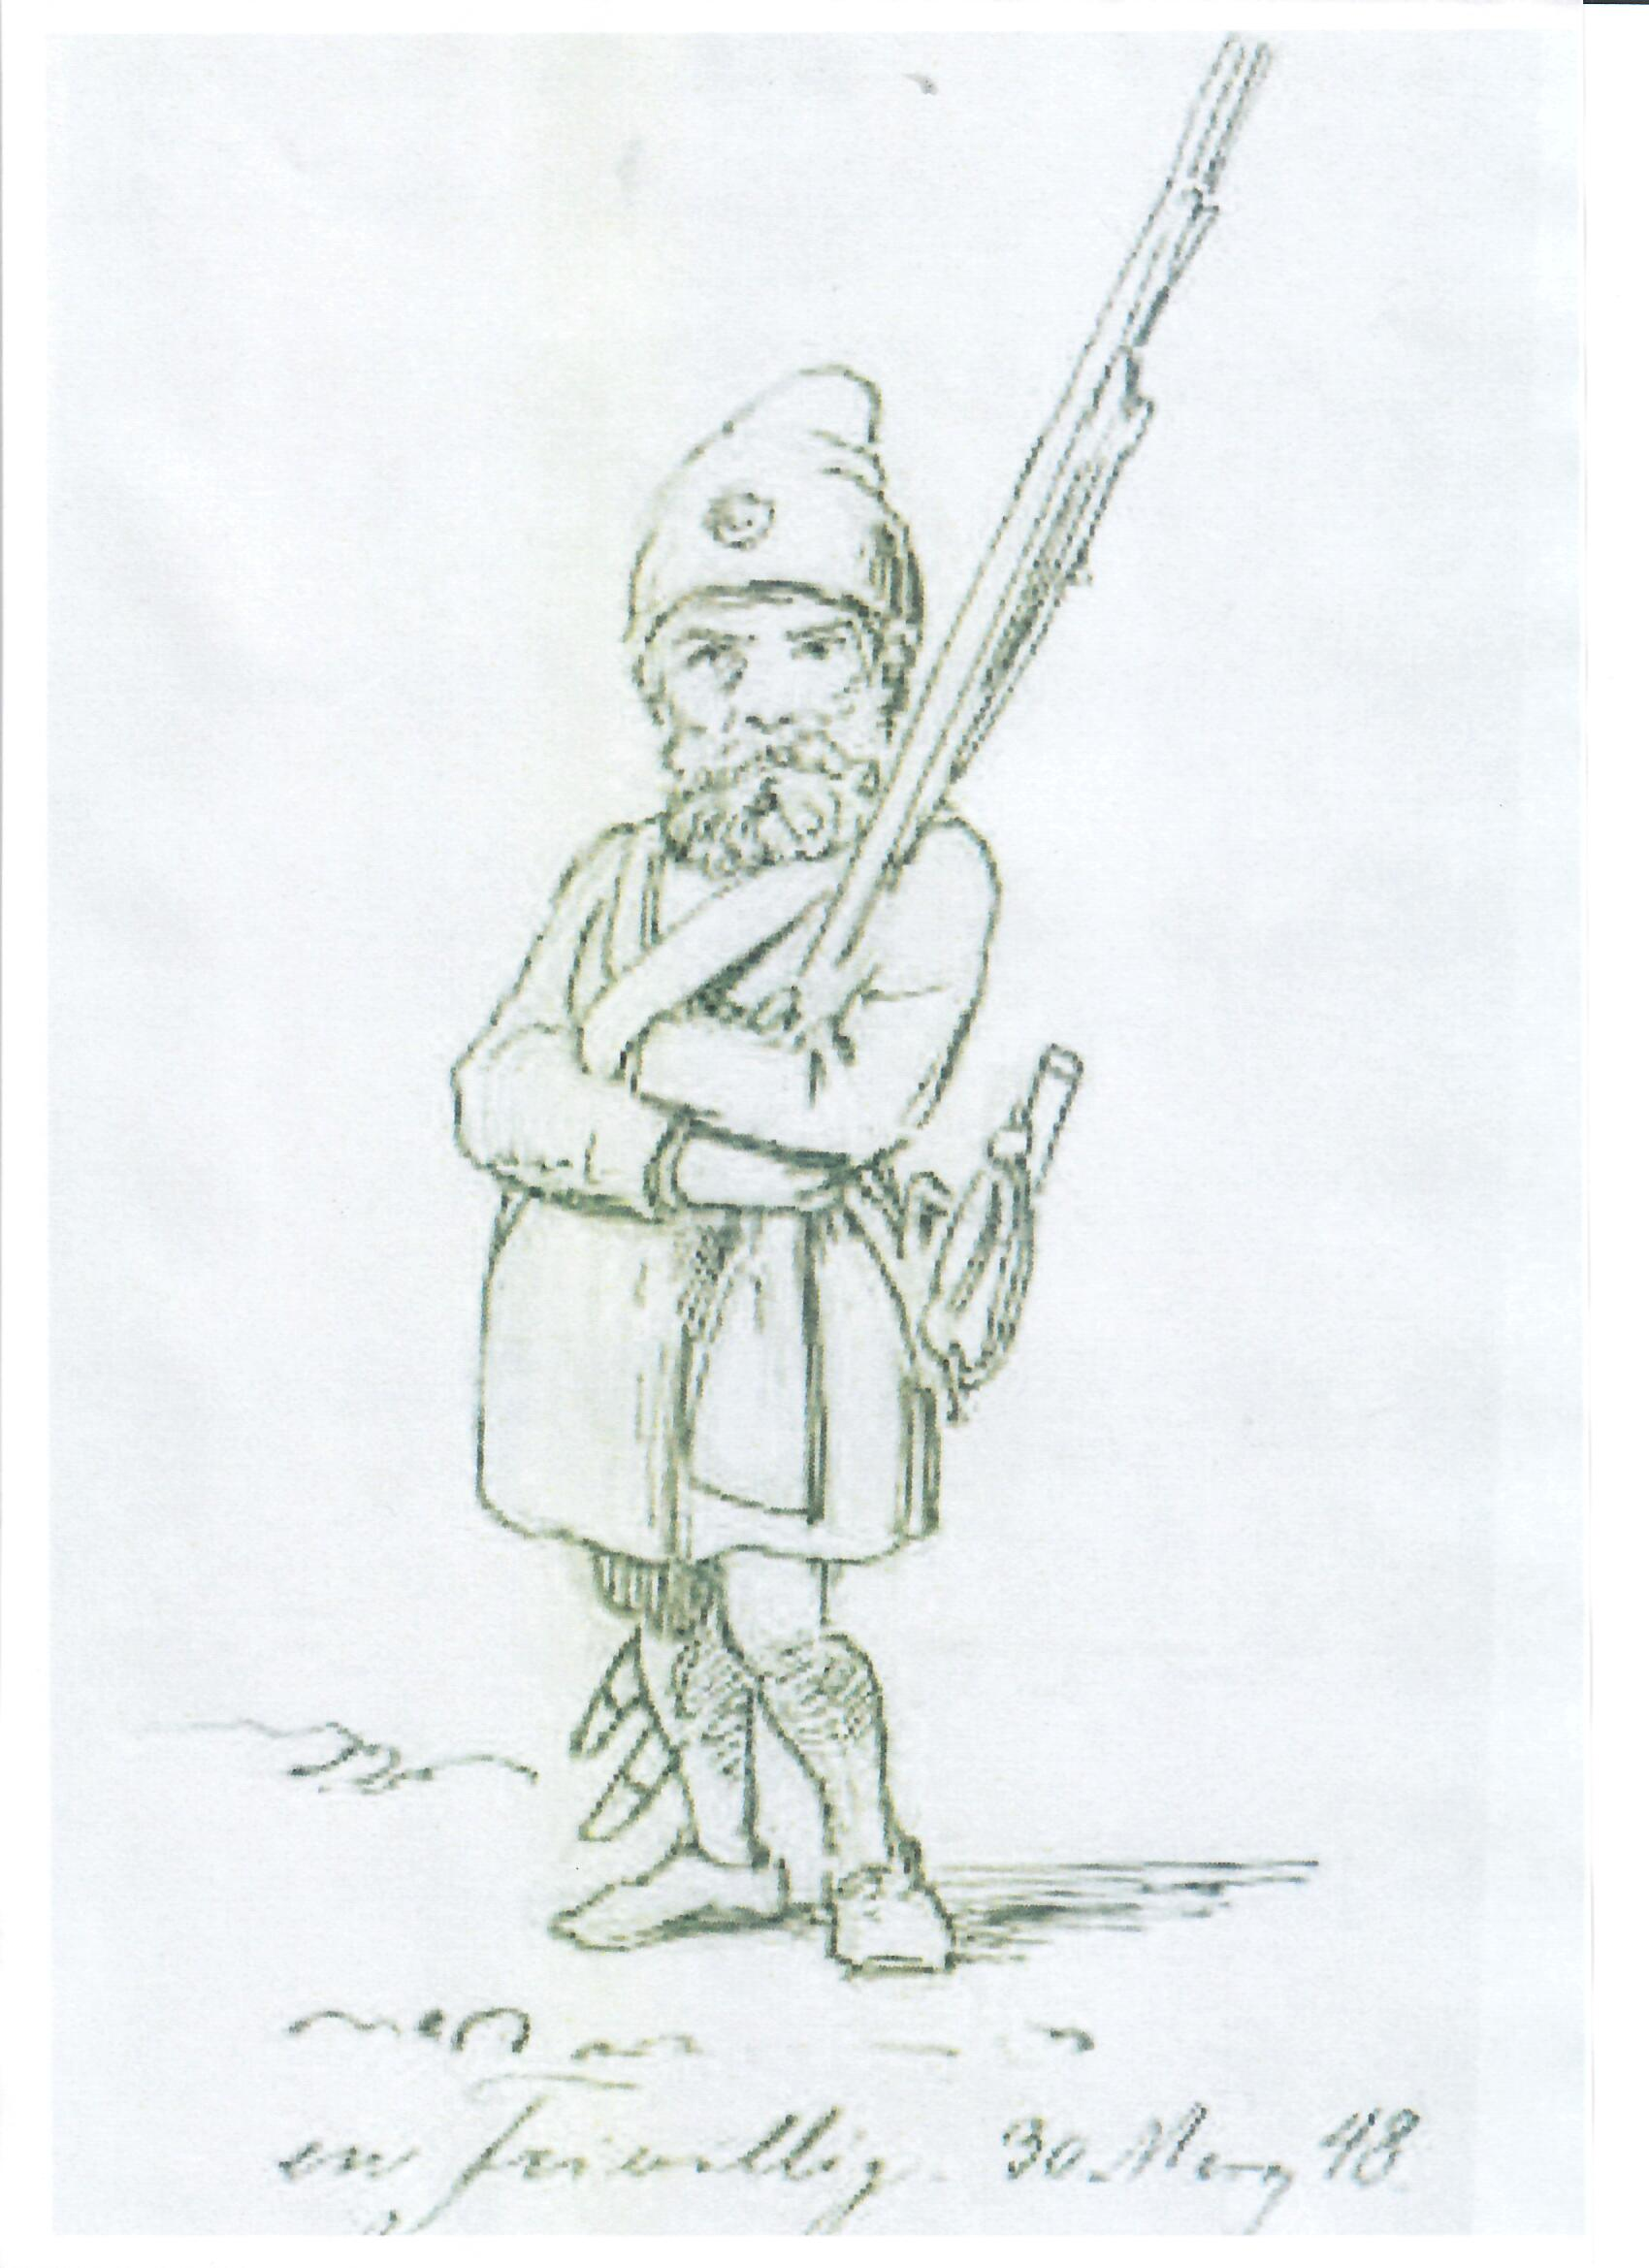 Thomas Lundbyes bevæbnede nisse (Bjergtrolden Sindre) fra 1848.